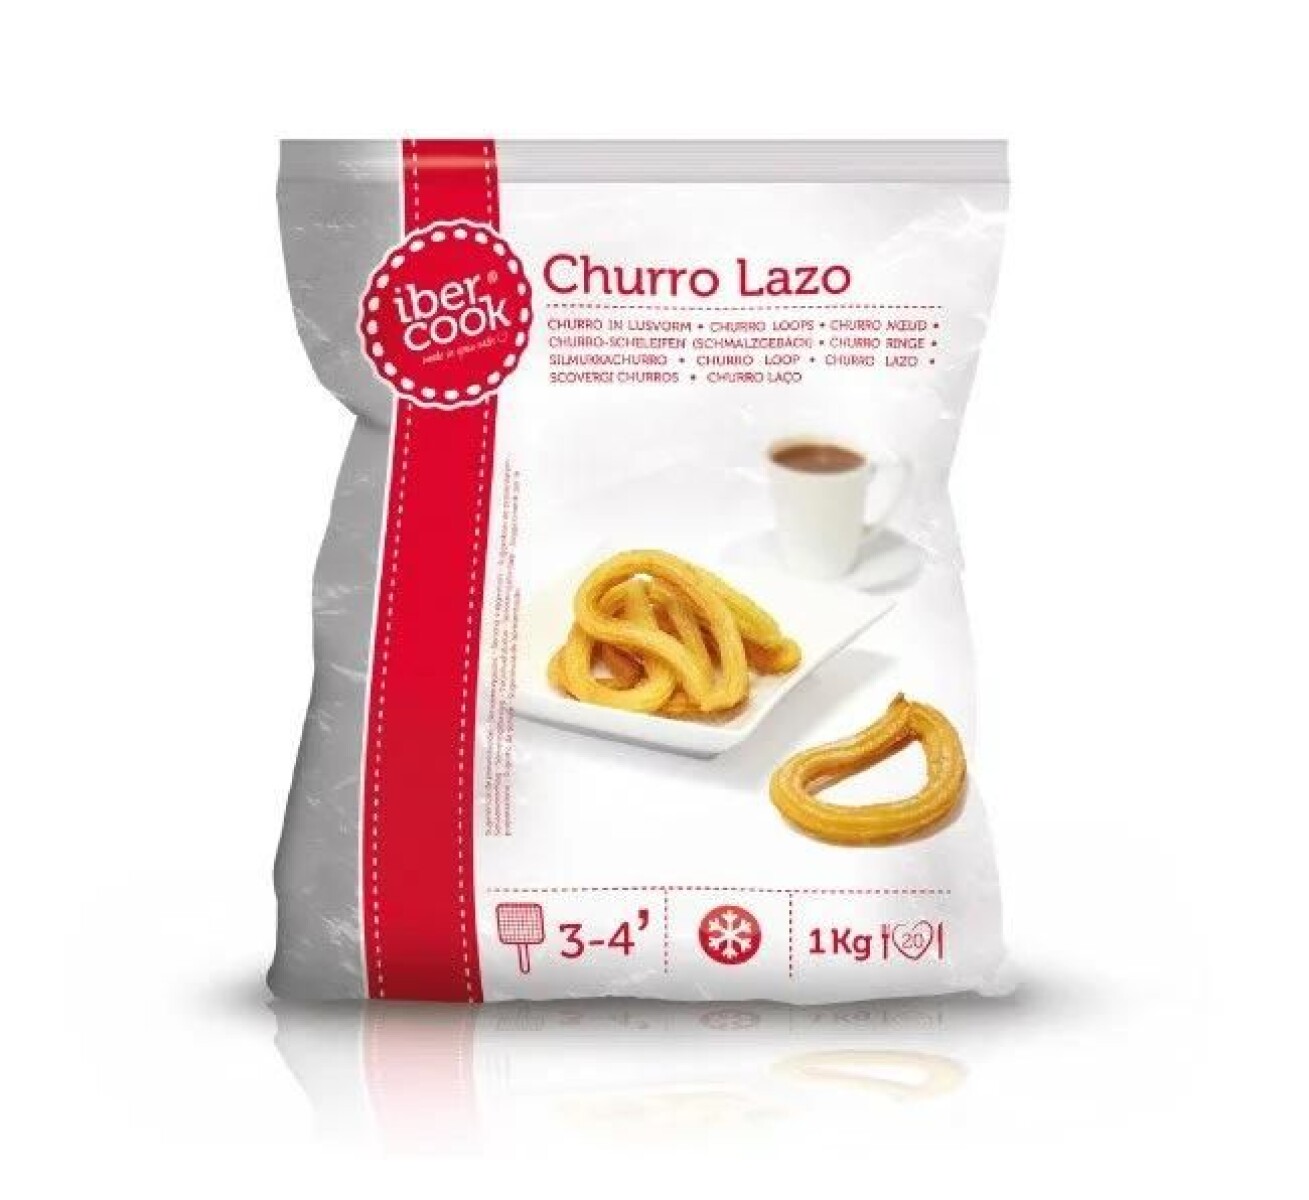 Churro Lazo Ibercook - 1kg 